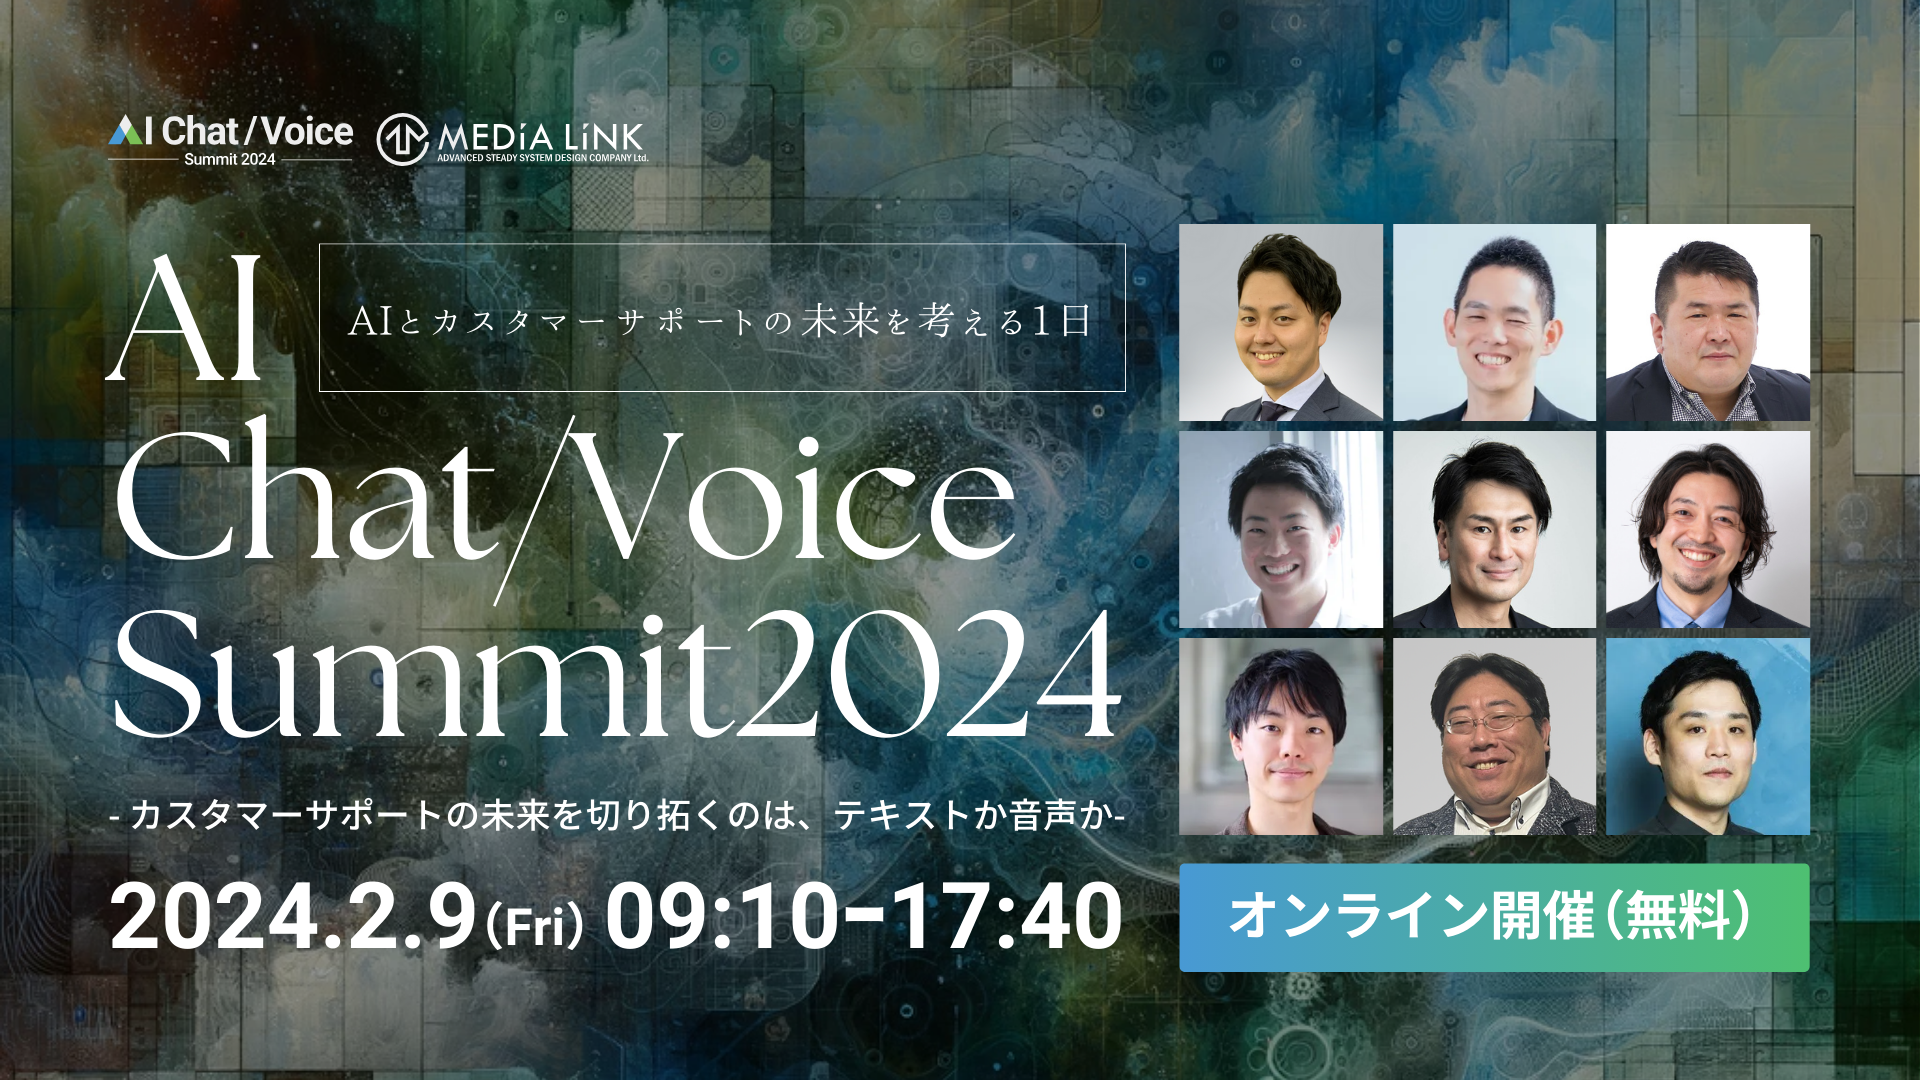 カスタマーサポート×AIを考えるオンラインイベント『AI Chat/Voice Summit 2024』に「マーケティングDX部門 プロフェッショナルサービス事業部」より守屋が登壇